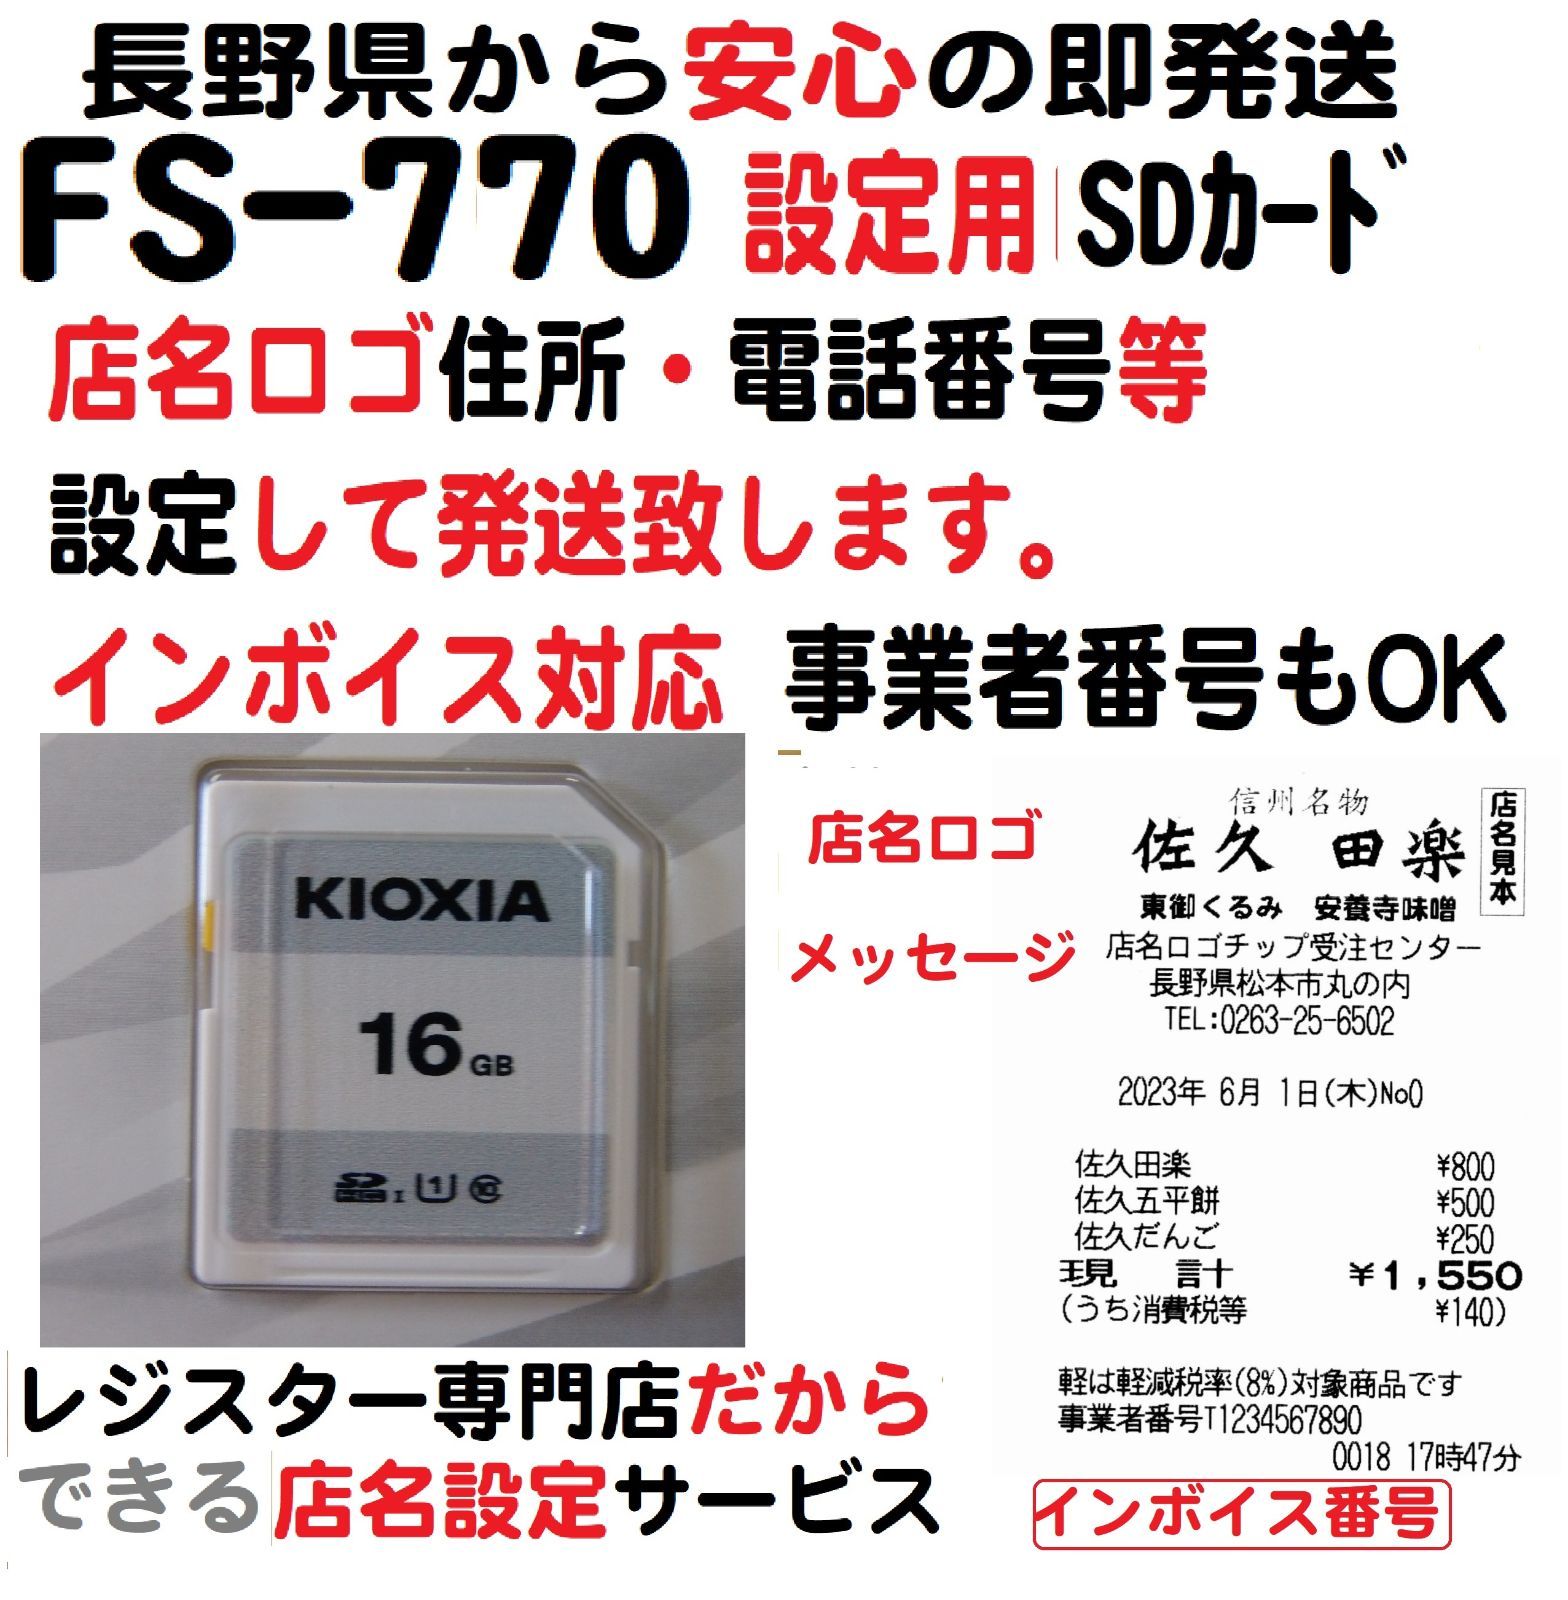 東芝テック FS-770 レジスター店名設定 SDｶｰﾄﾞインボイス レジスター専門店0263-25-6502 メルカリ